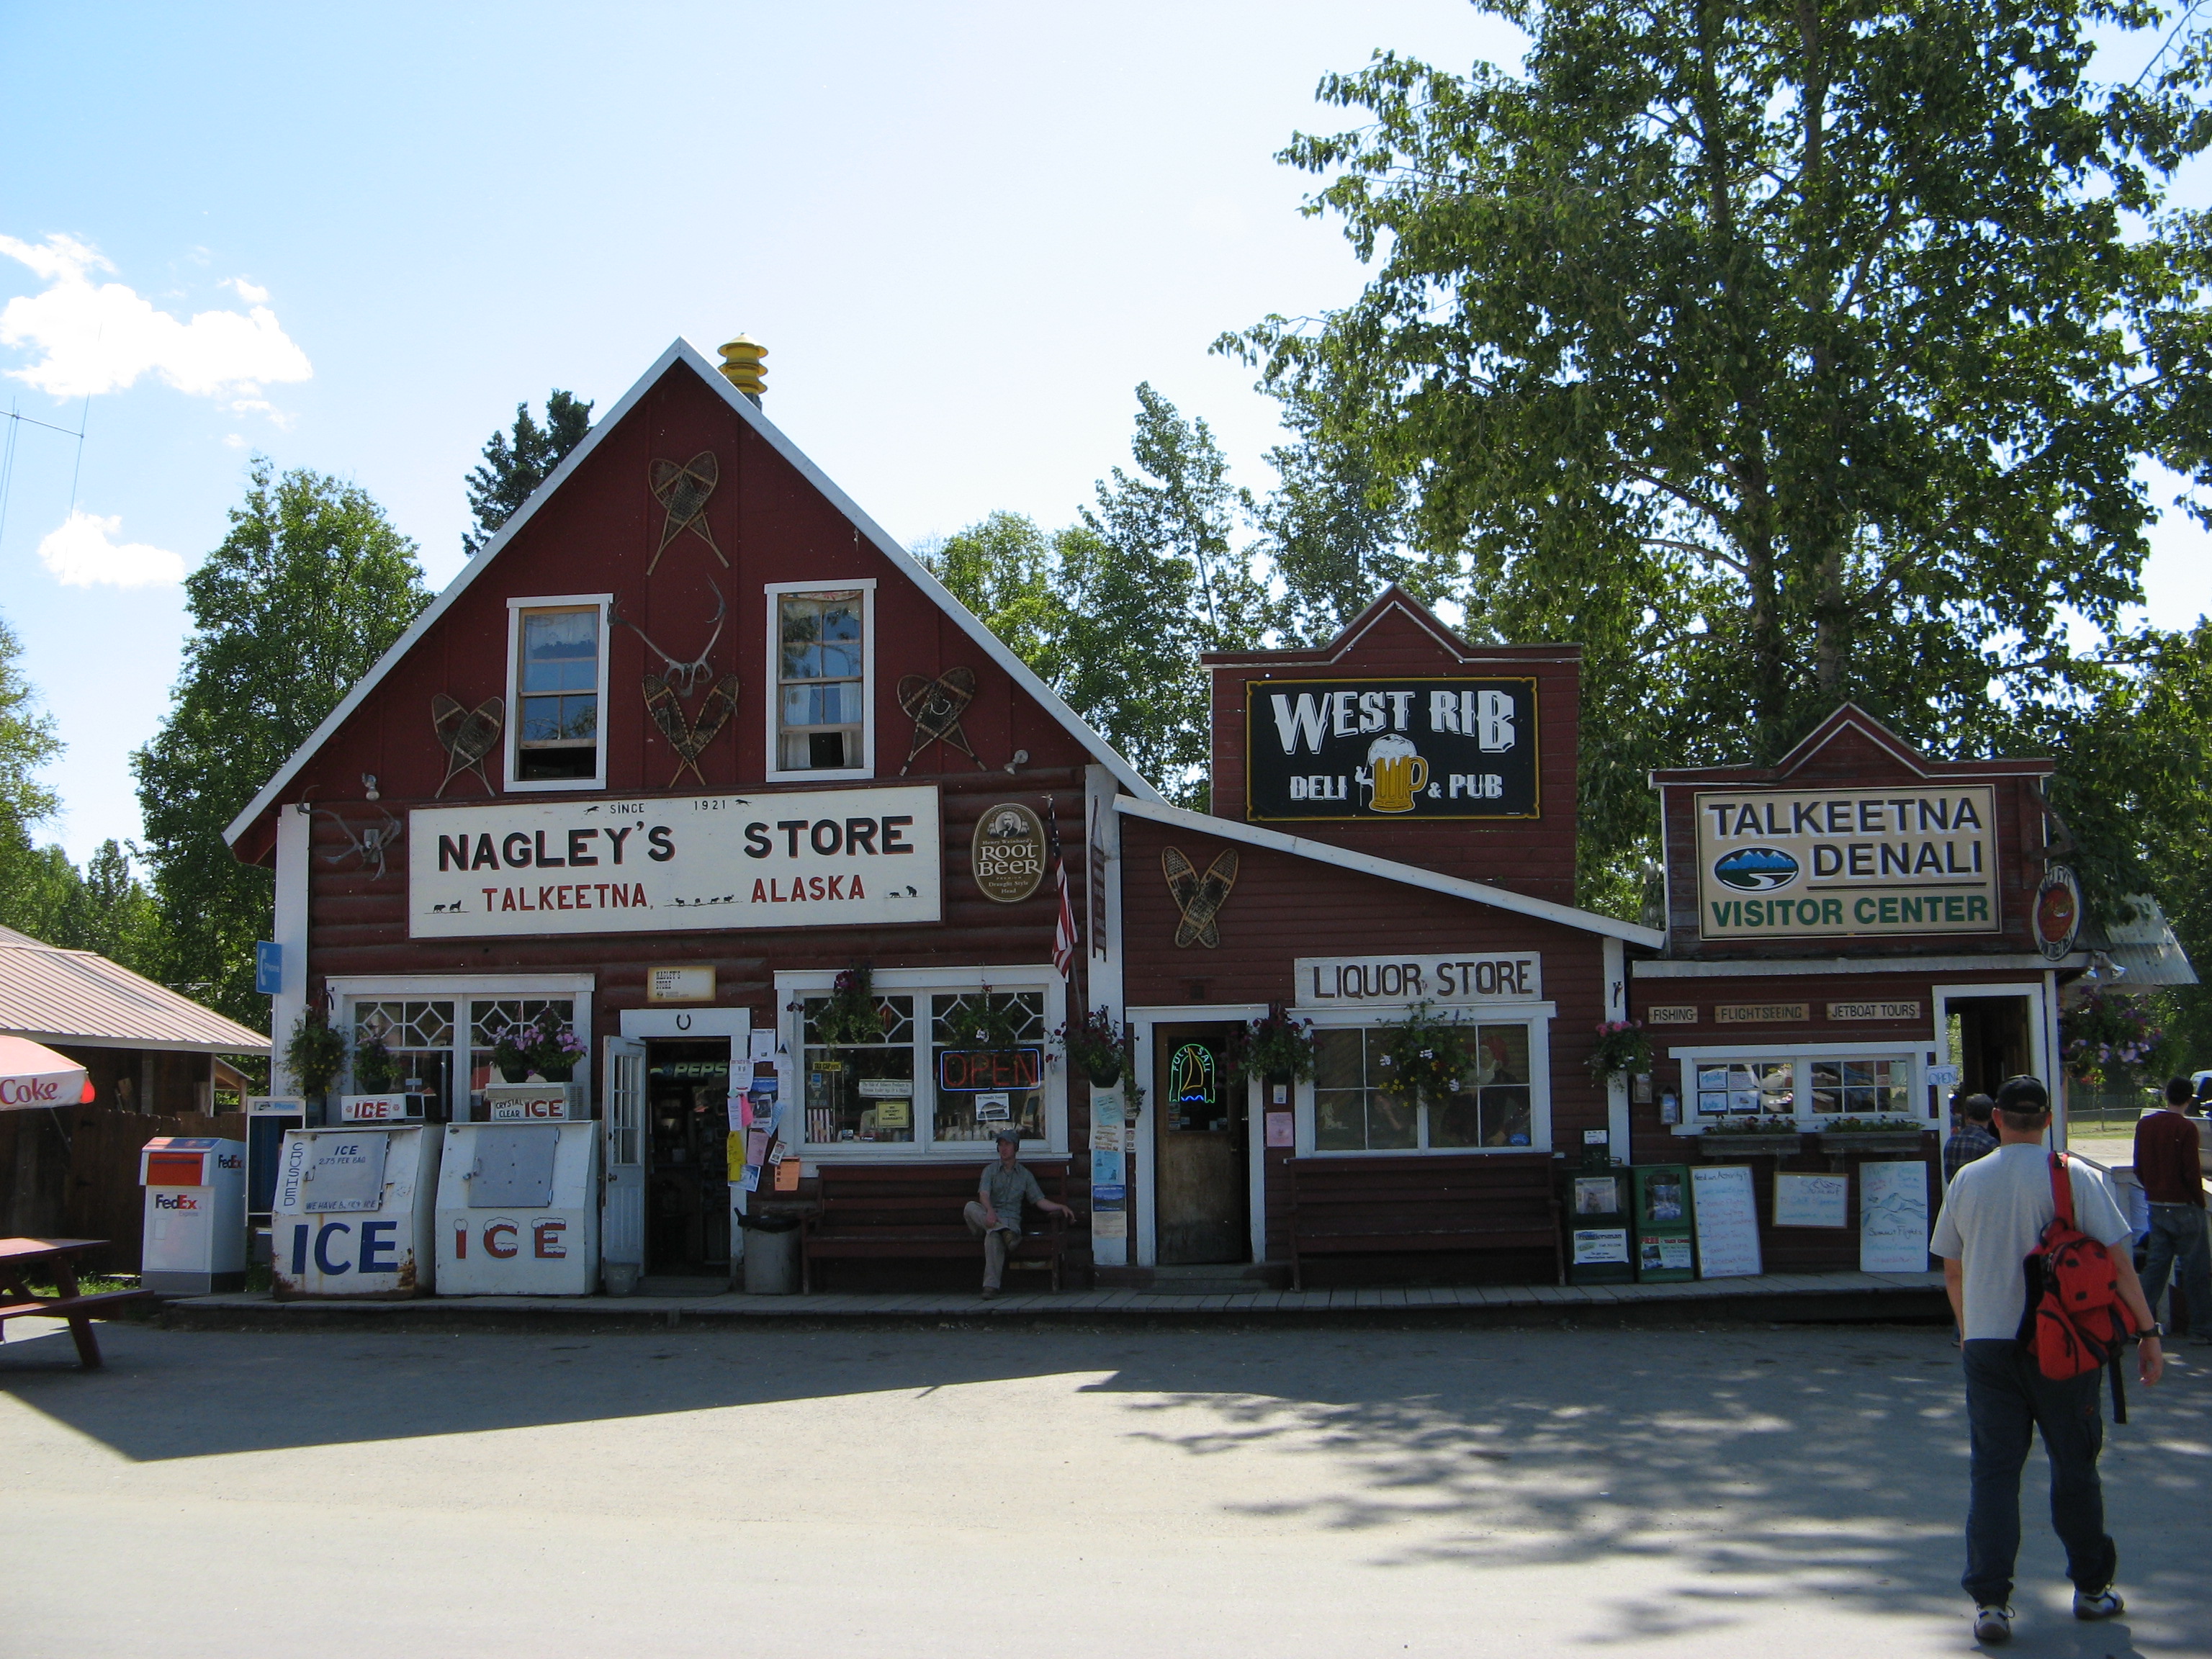 Nagley's grocery store in Talkeetna, Alaska.